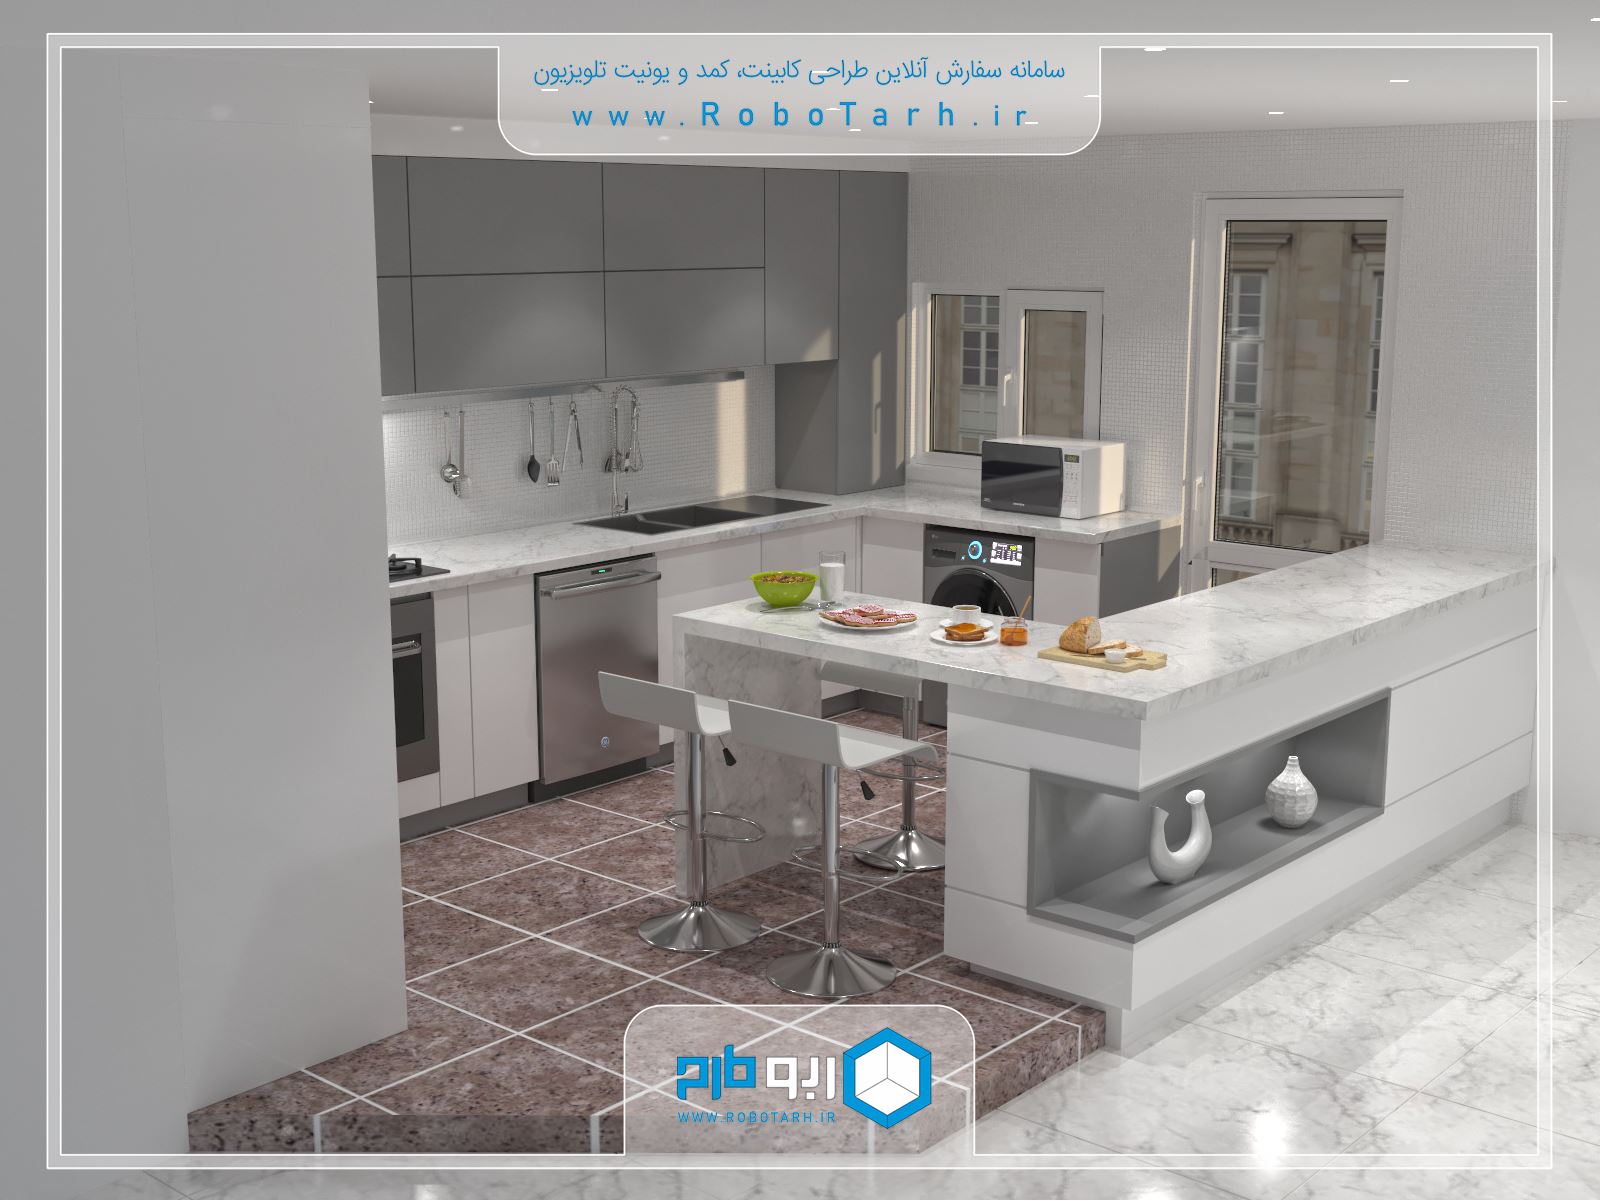 طراحی کابینت آشپزخانه مدرن به رنگ سفید و خاکستری به همراه کانتر جذاب و شیک